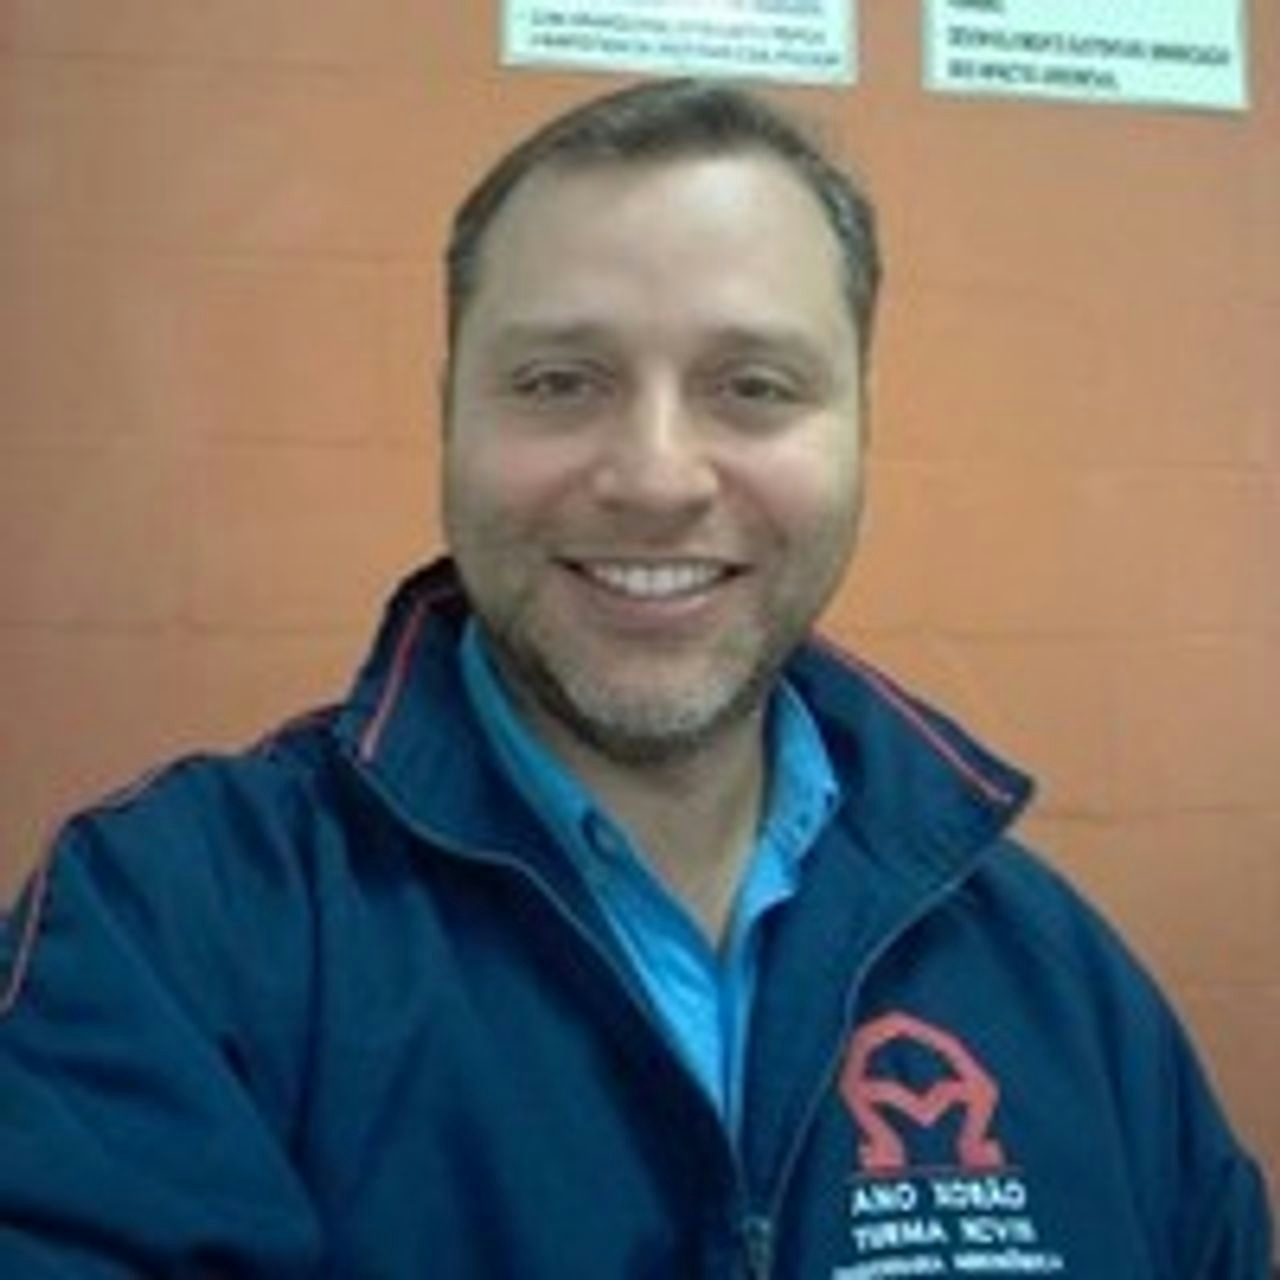 Carlos Manochio